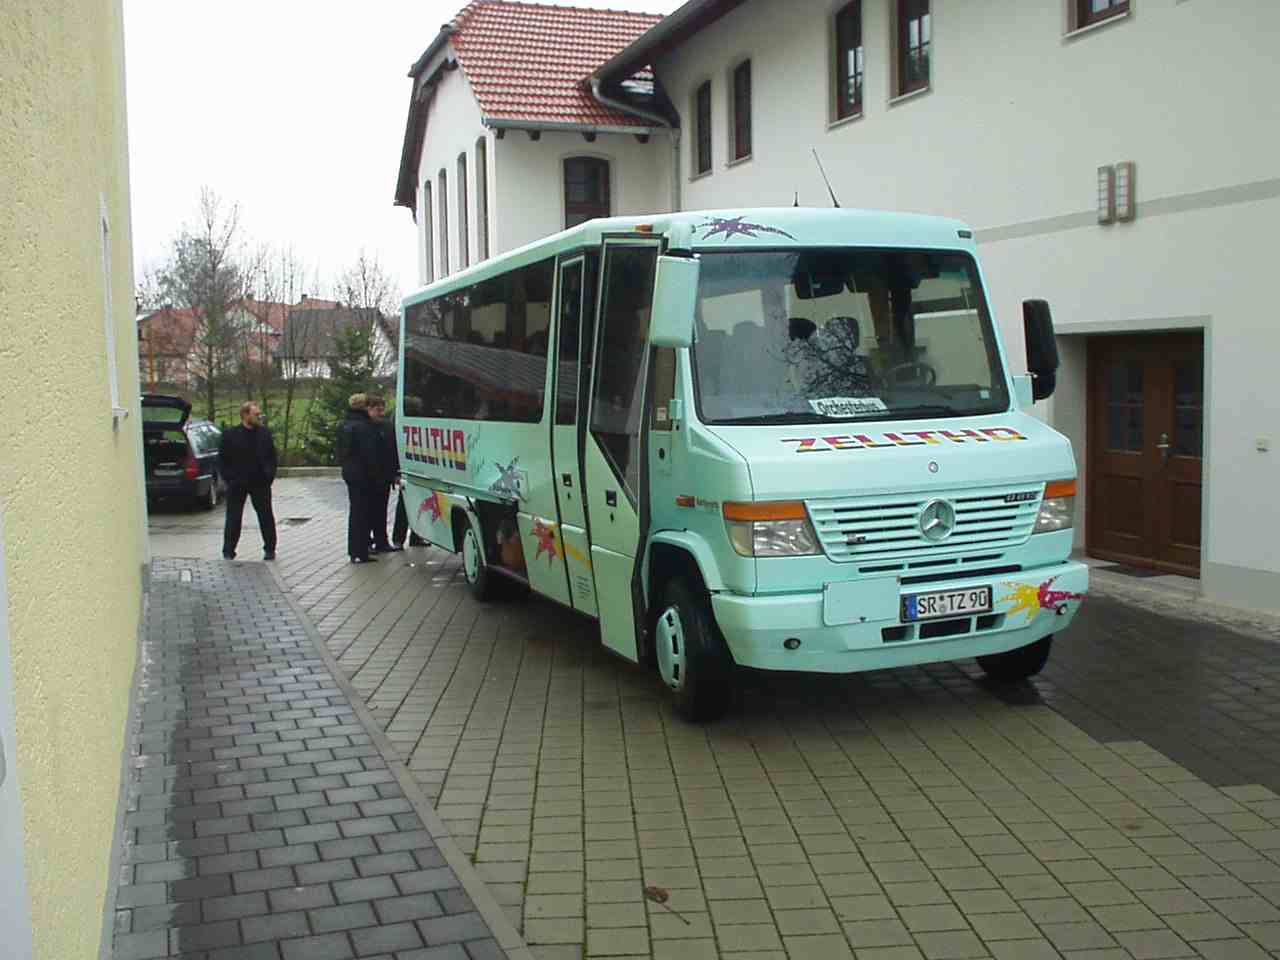 Buseinstieg in Ergoldsbach